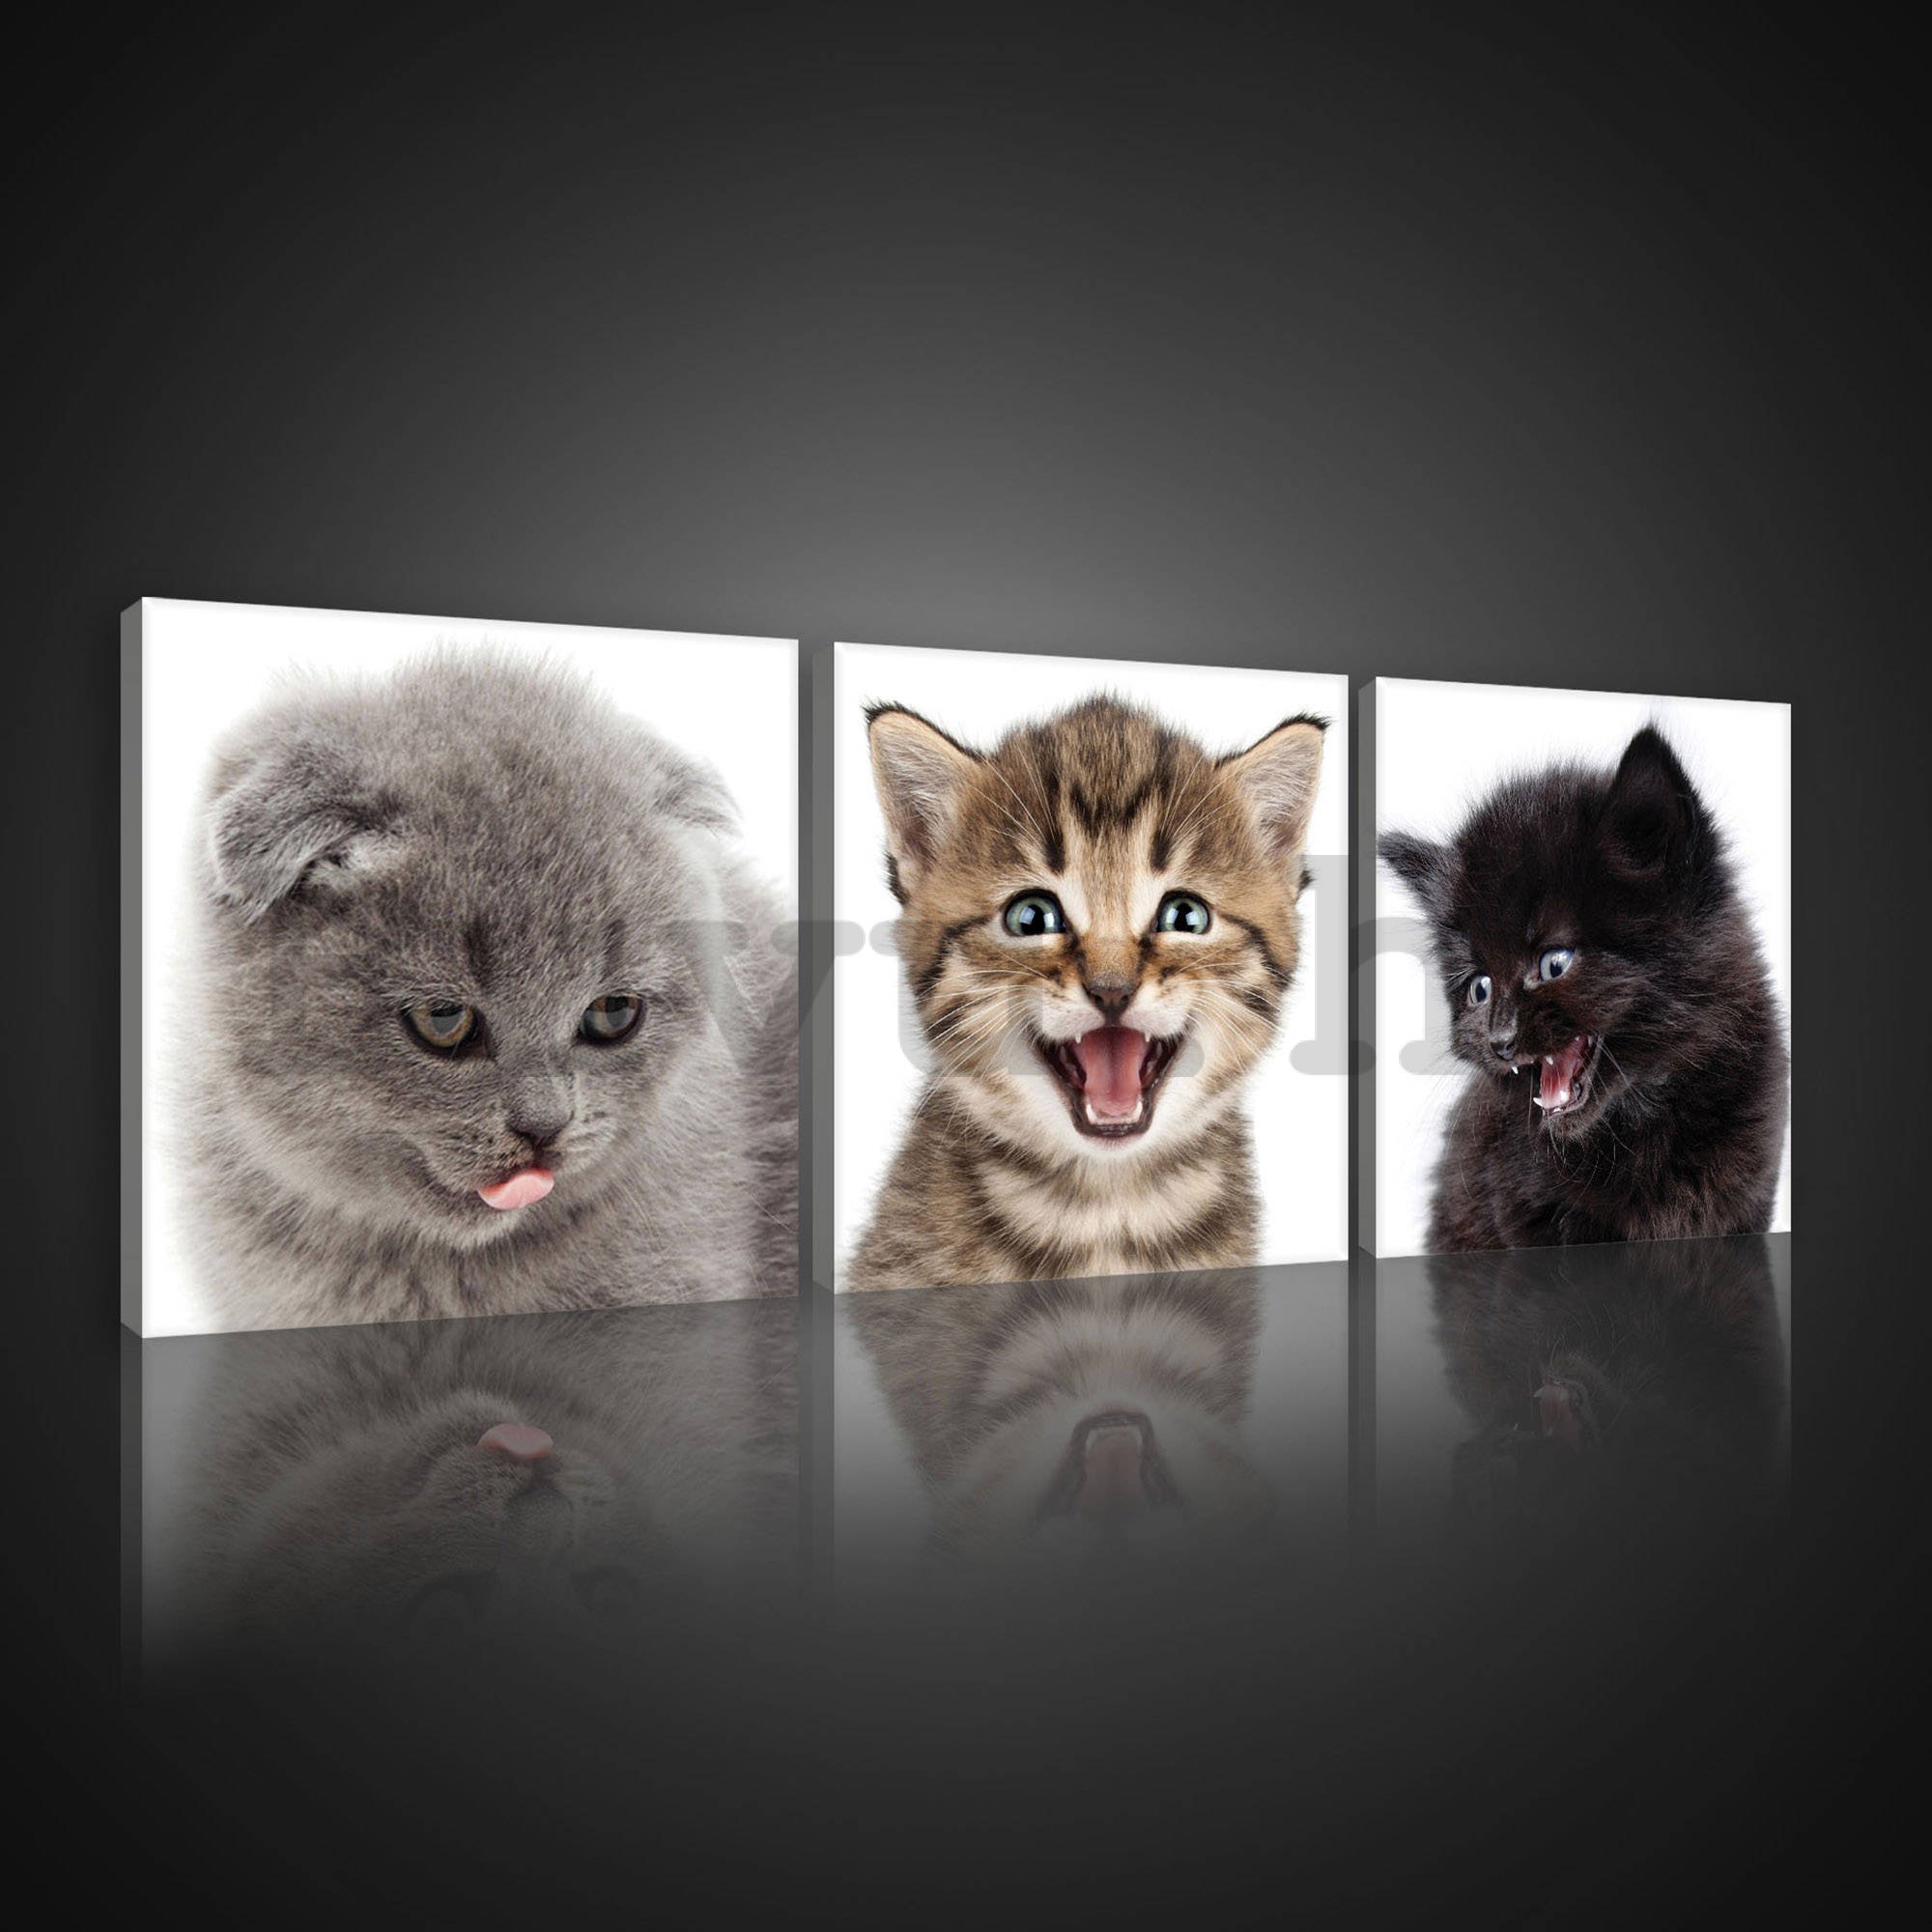 Vászonkép: Kittens (1) - készlet 3db 25x25cm